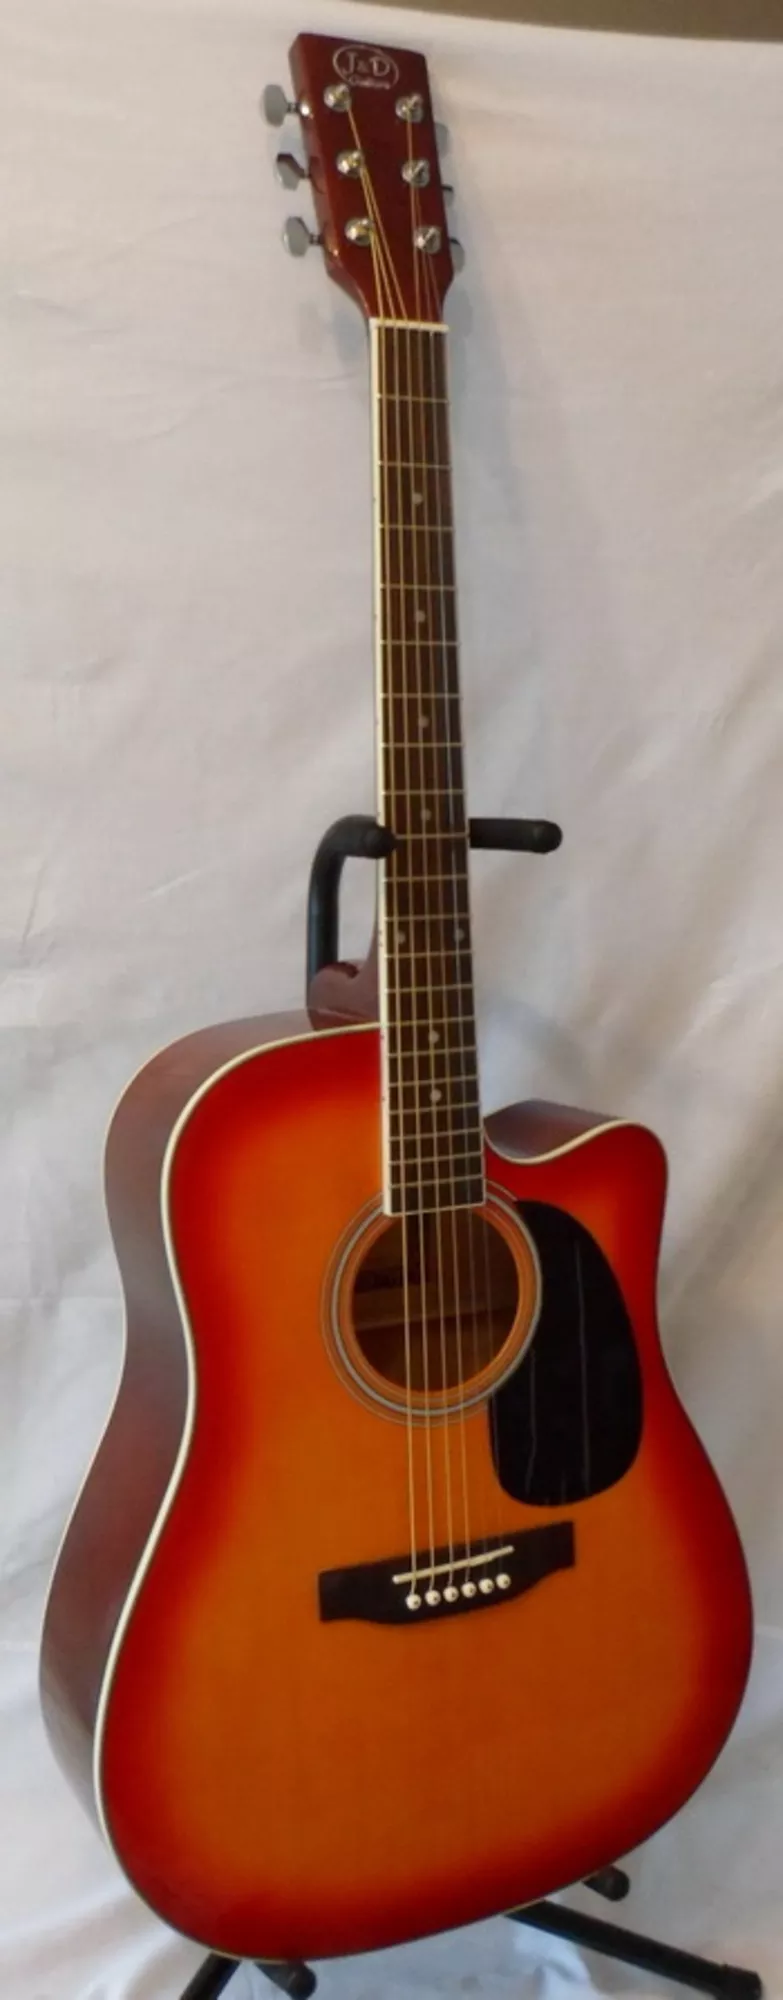 Продам акустическую гитару J&D (AG-8c), новая,  доставка 2